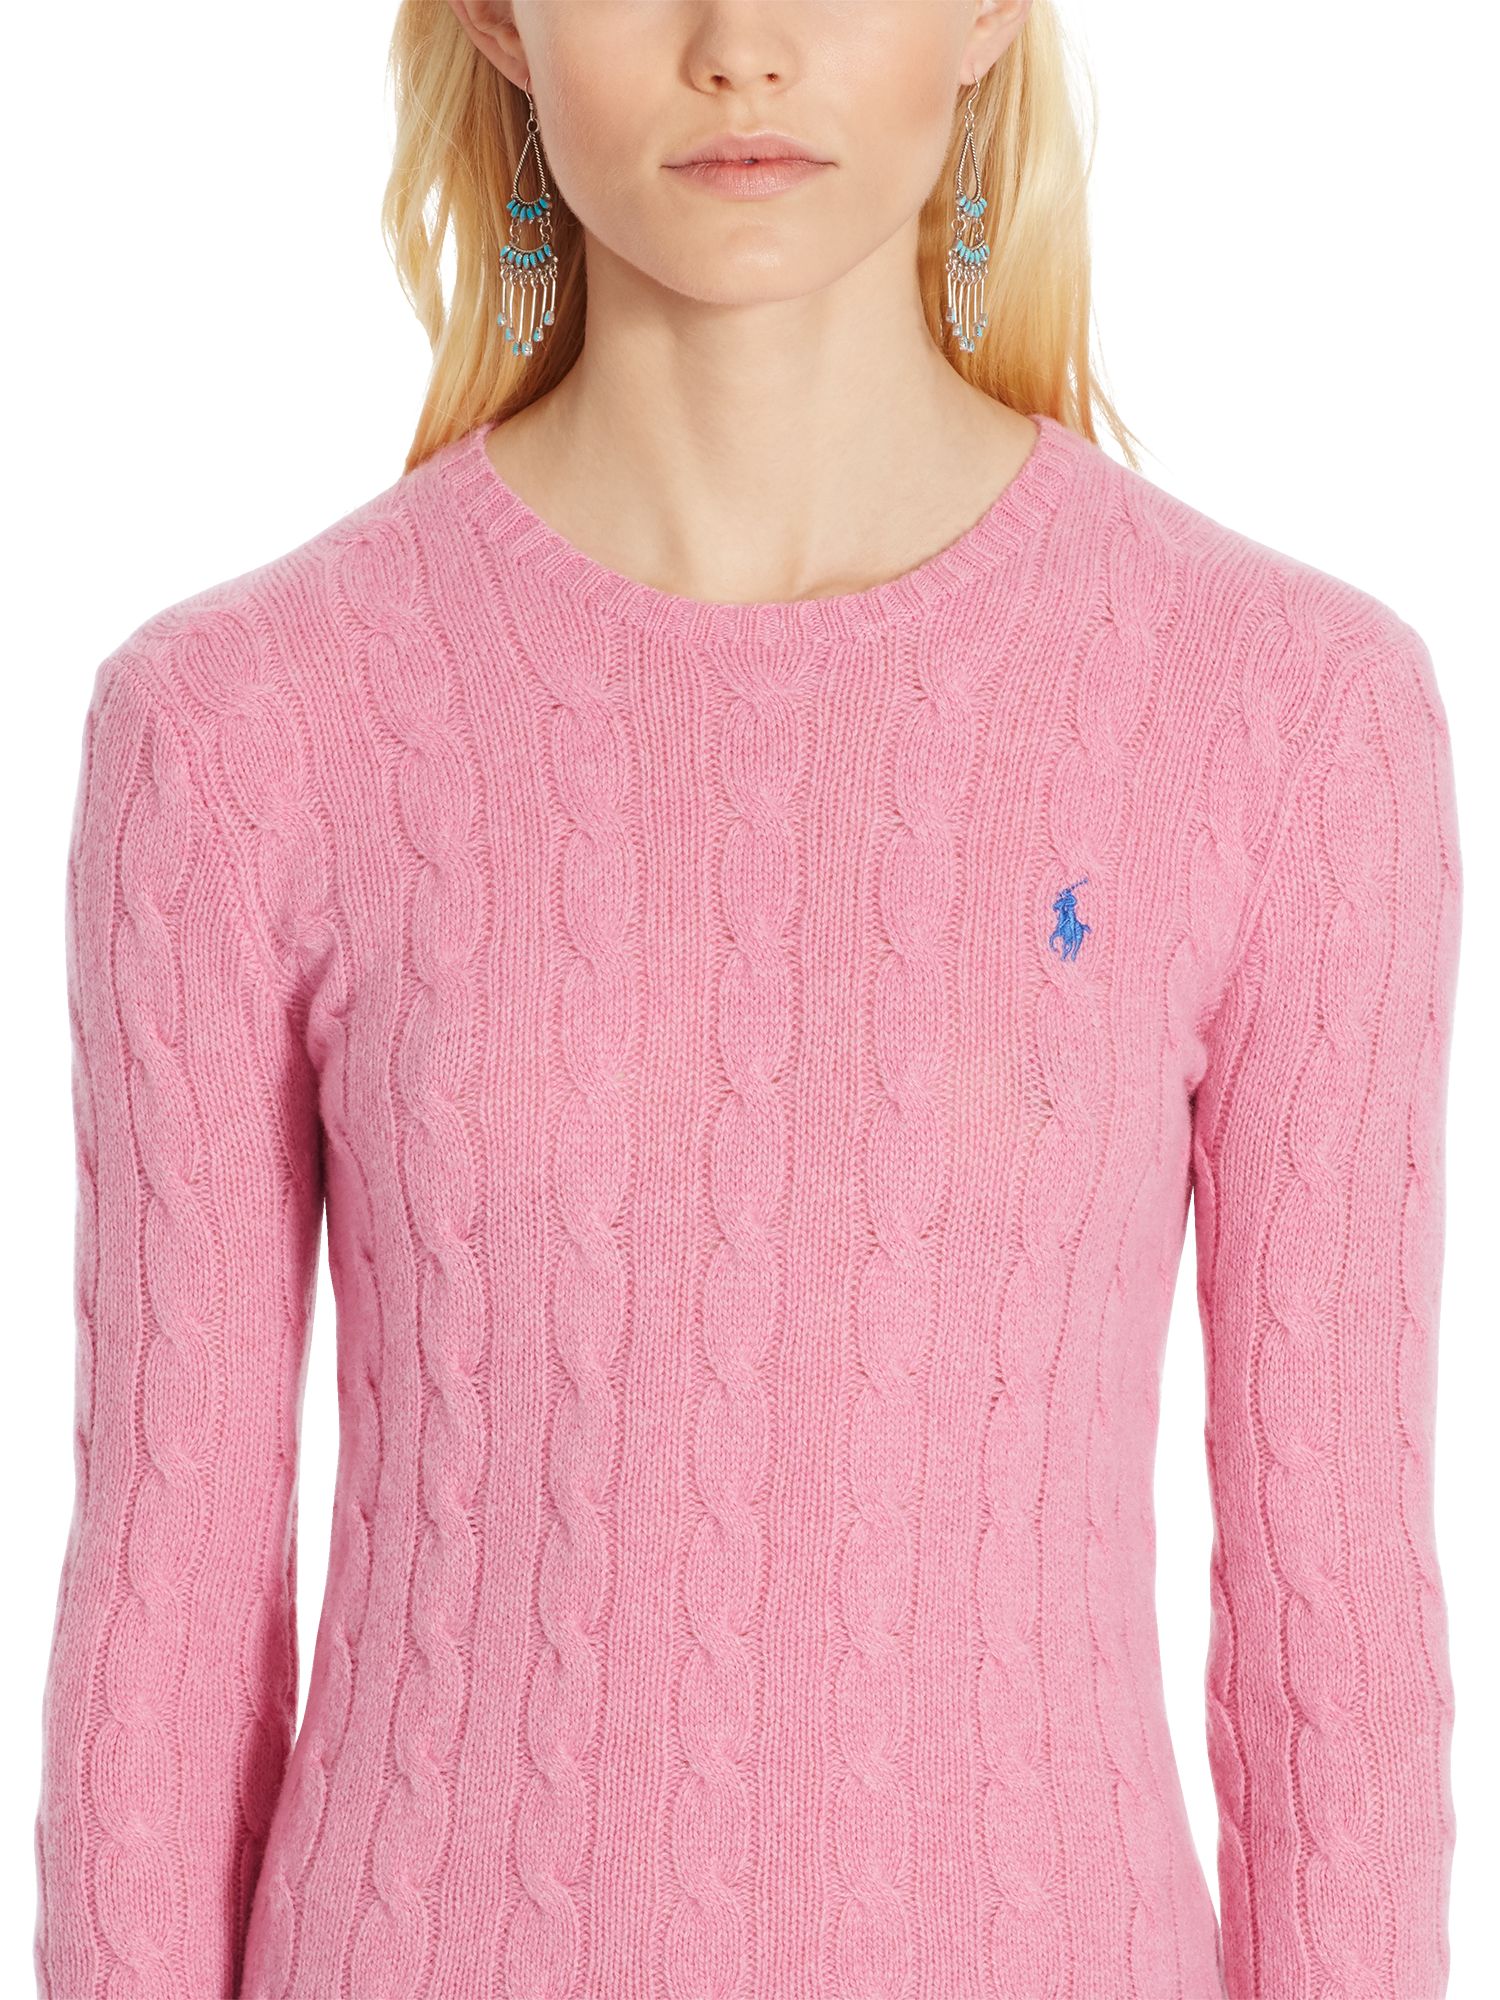 polo ralph lauren pink sweater